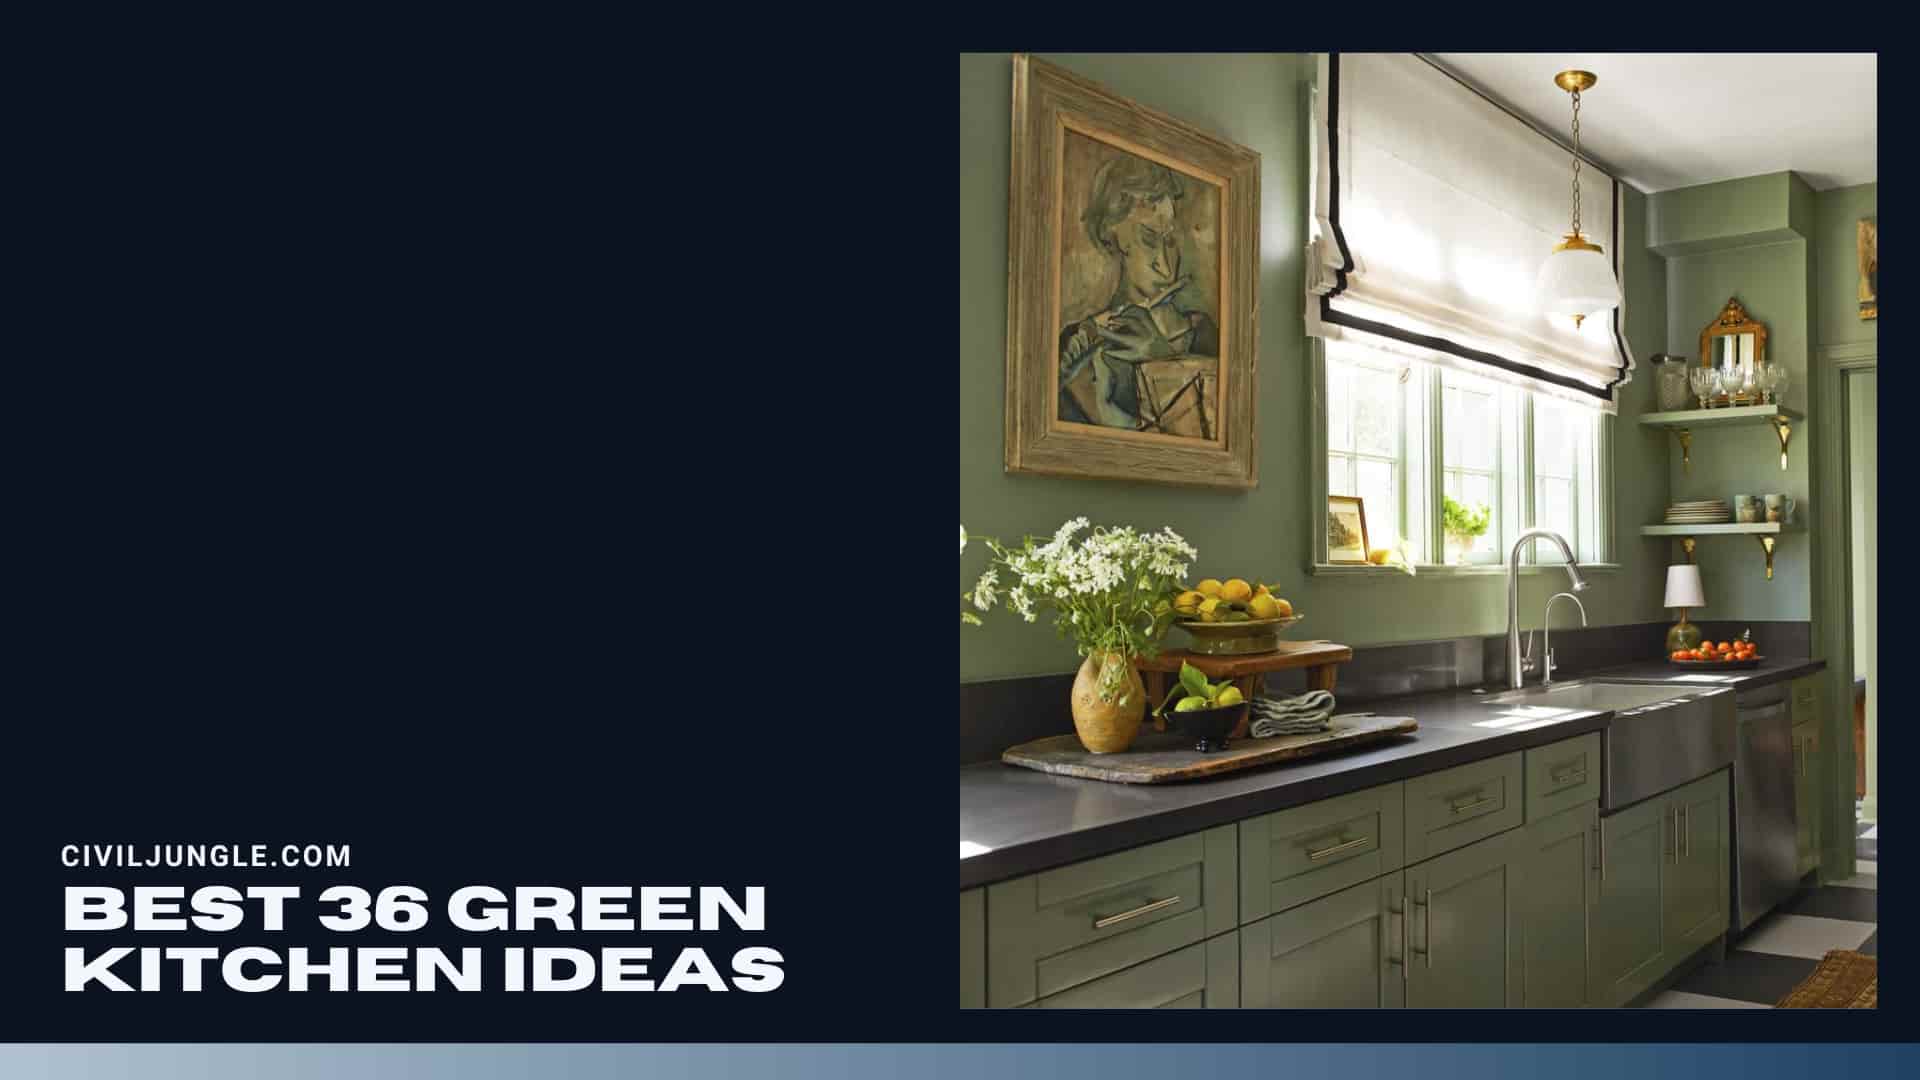 Best 36 Green Kitchen Ideas